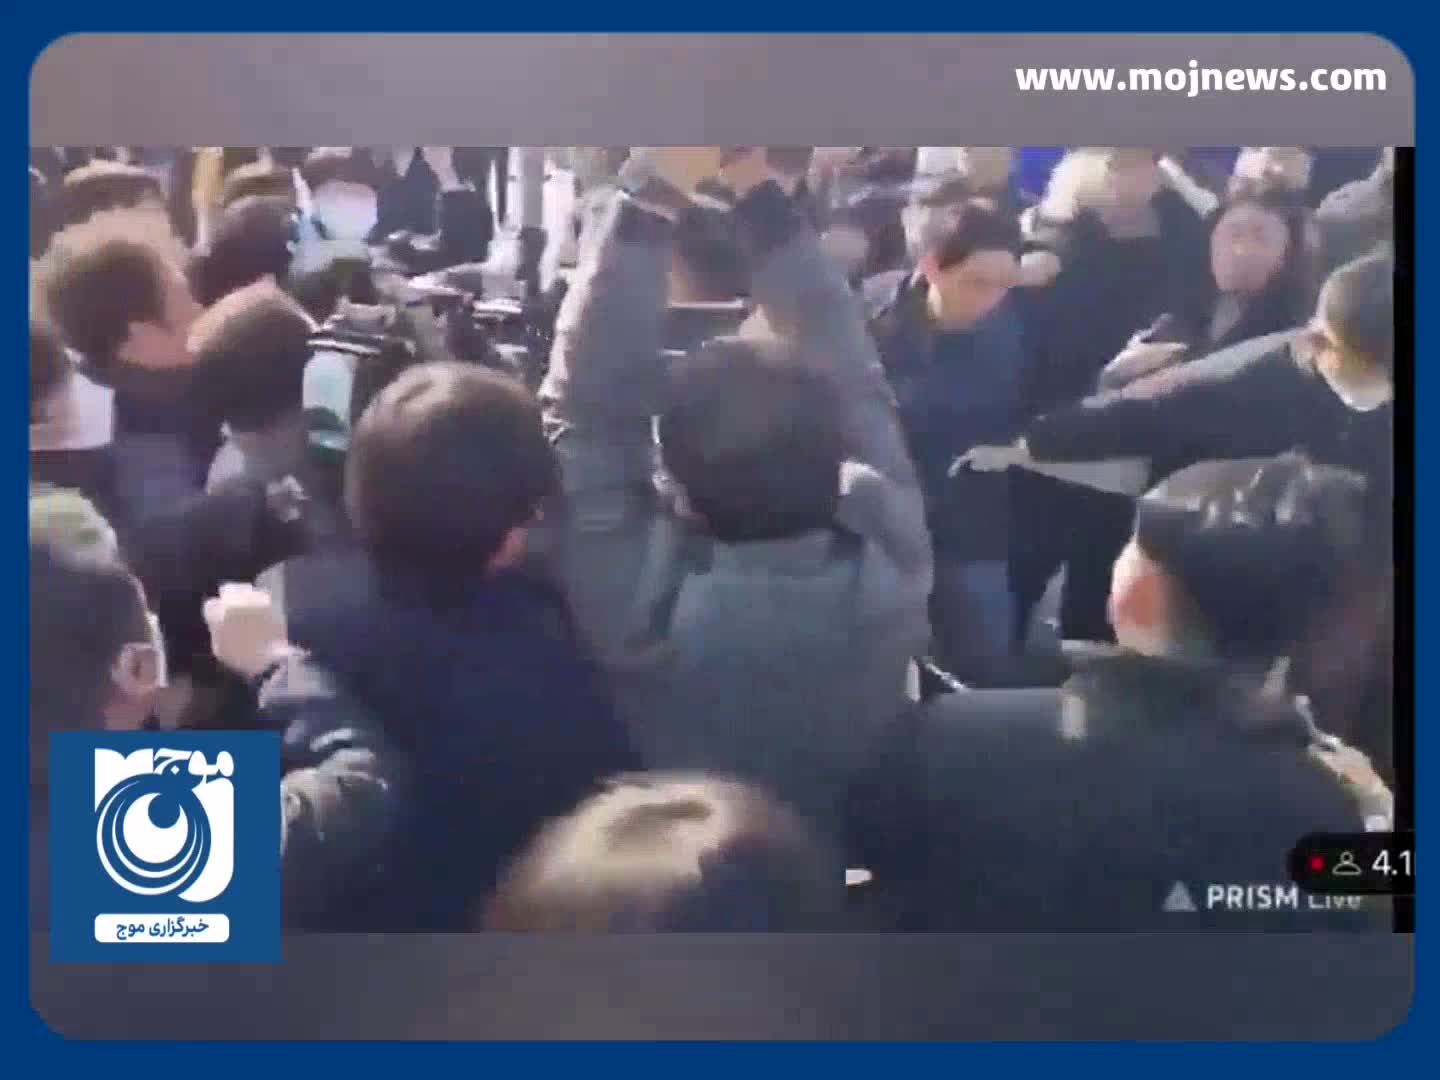 حمله به رهبر حزب اپوزیسیون کره جنوبی با سلاح سرد + فیلم